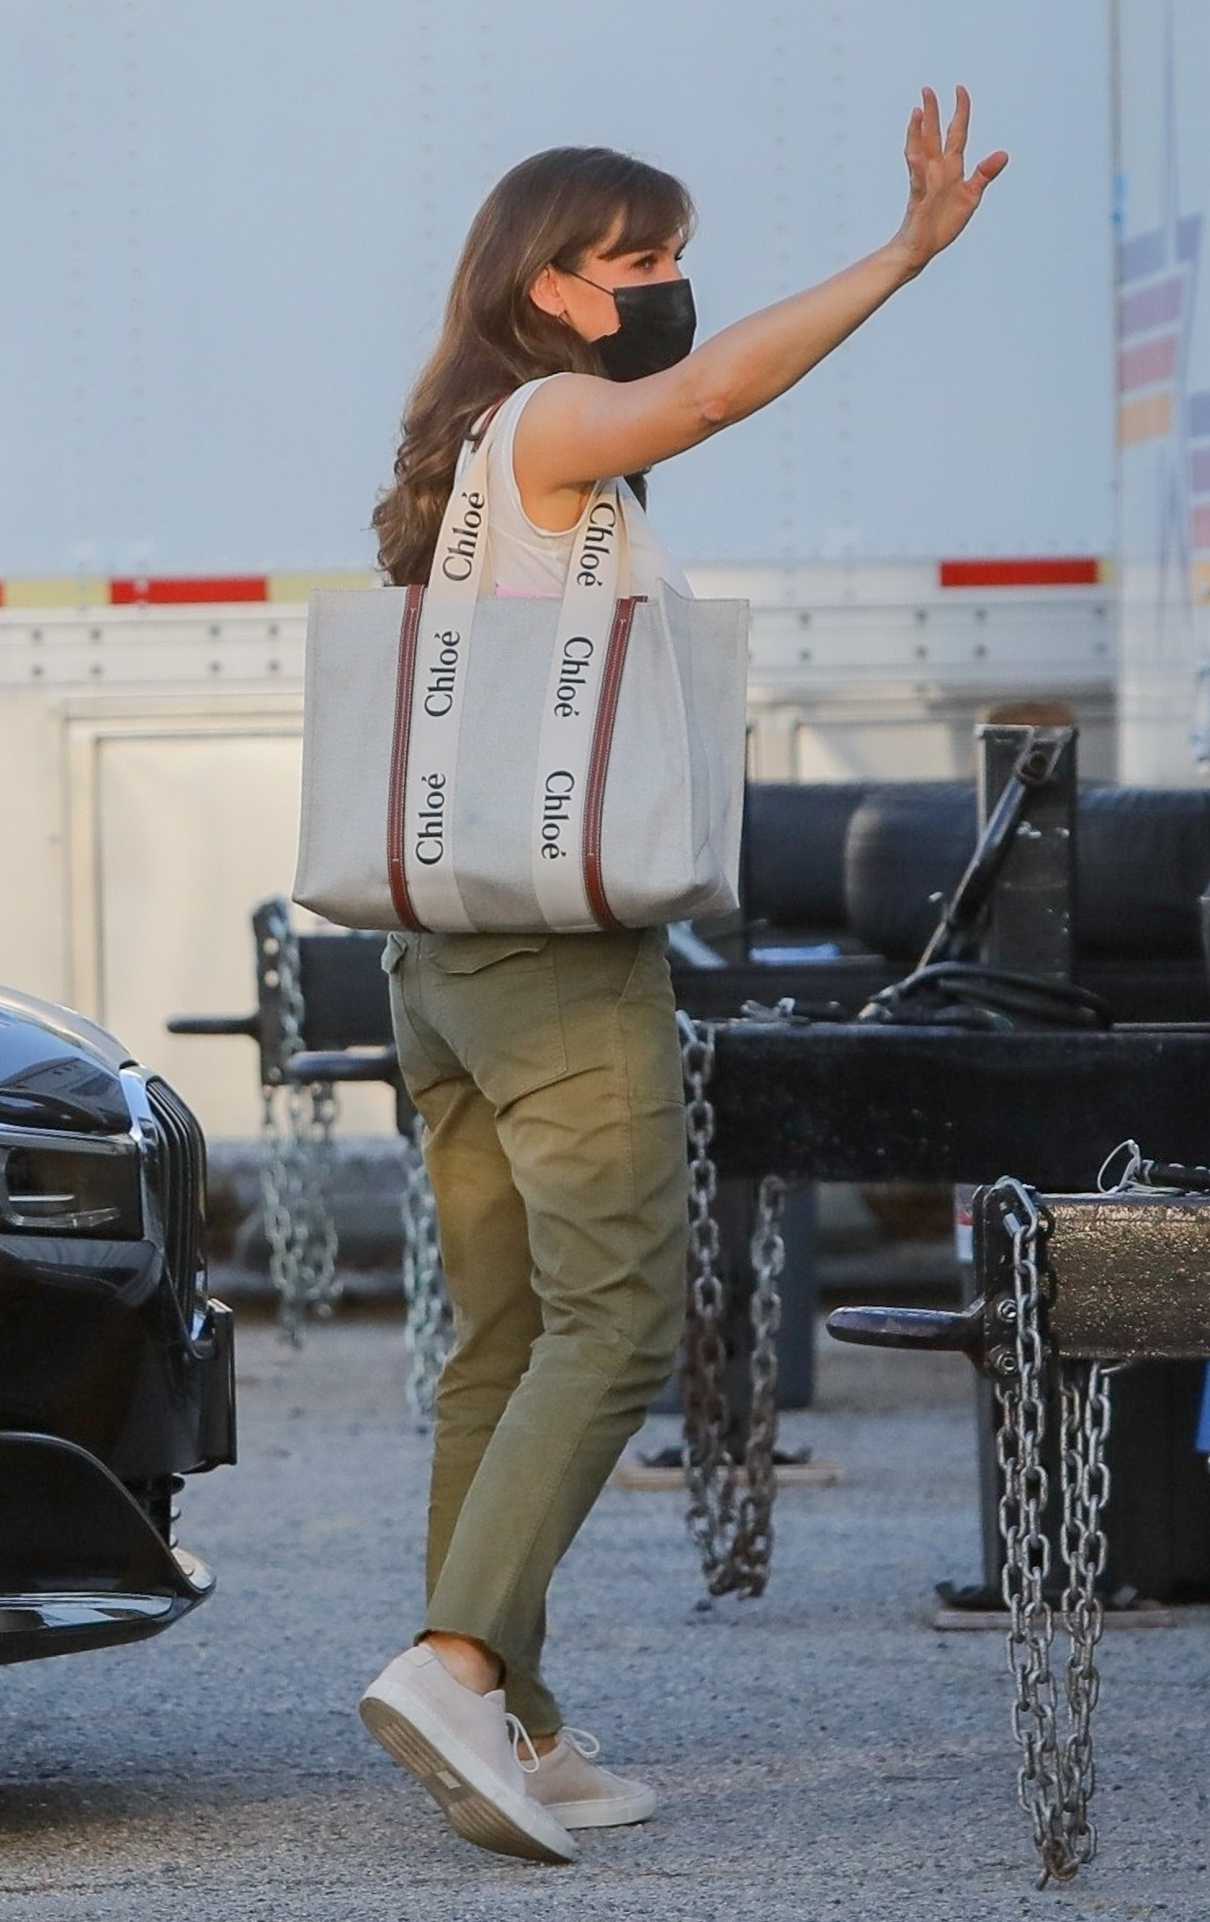 Jennifer Garner in an Olive Pants